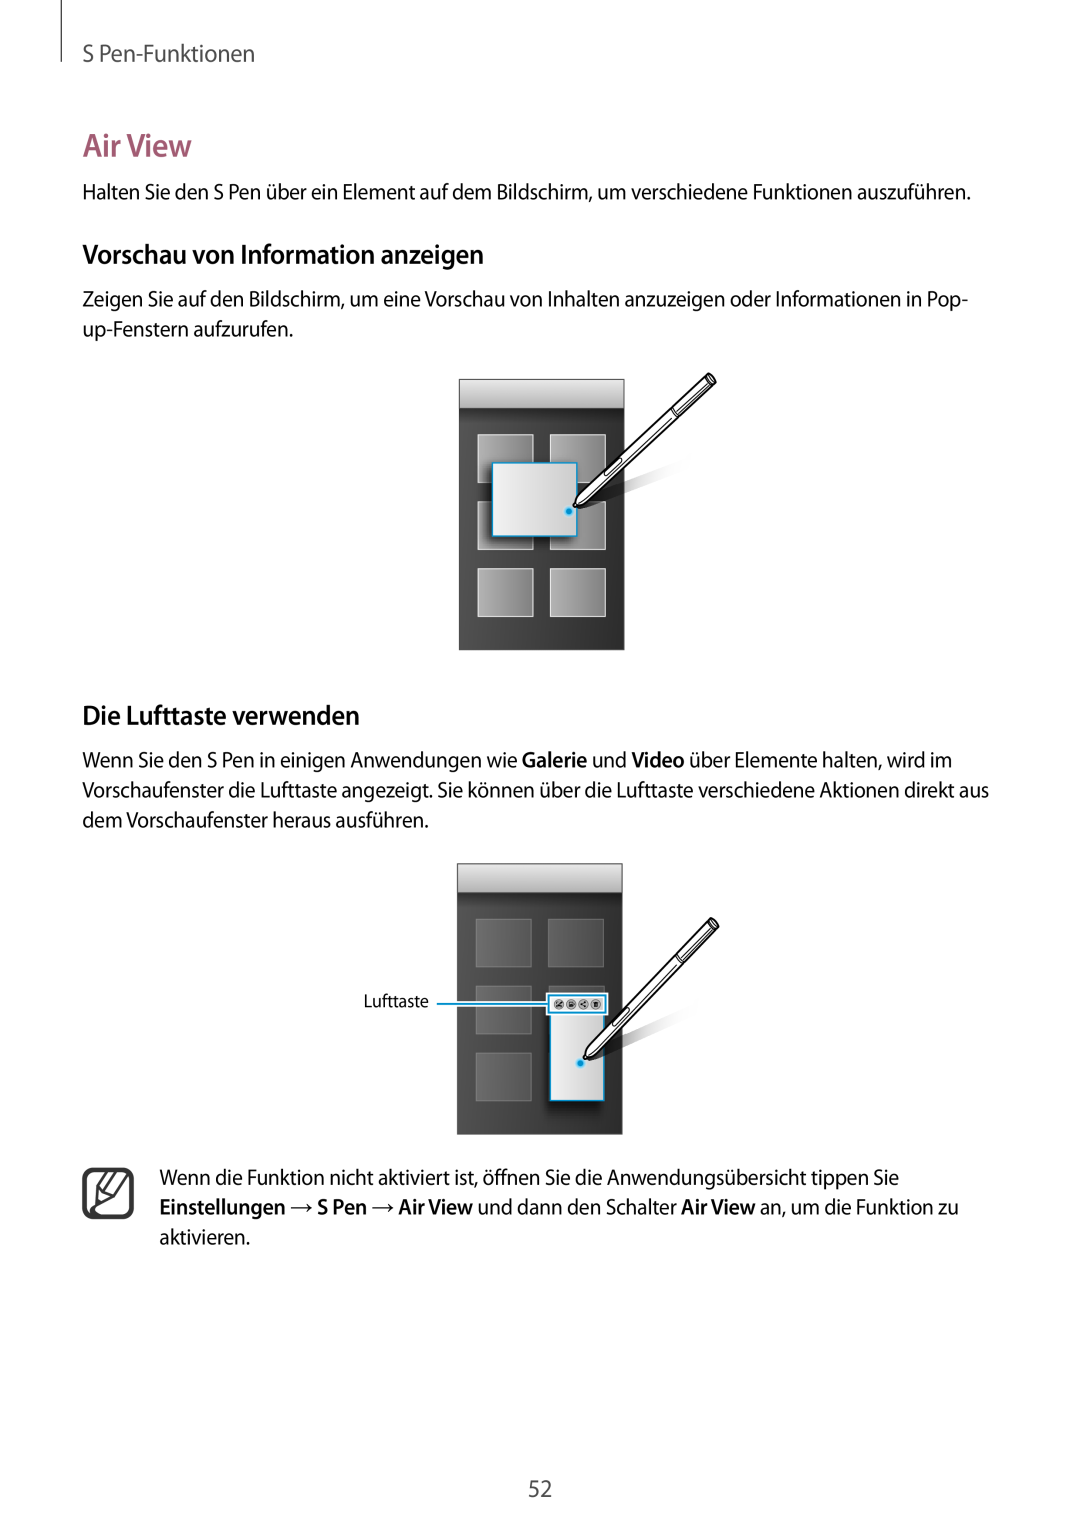 Samsung SM-N910FZKEATO manual Air View, Vorschau von Information anzeigen, Die Lufttaste verwenden, S Pen-Funktionen 